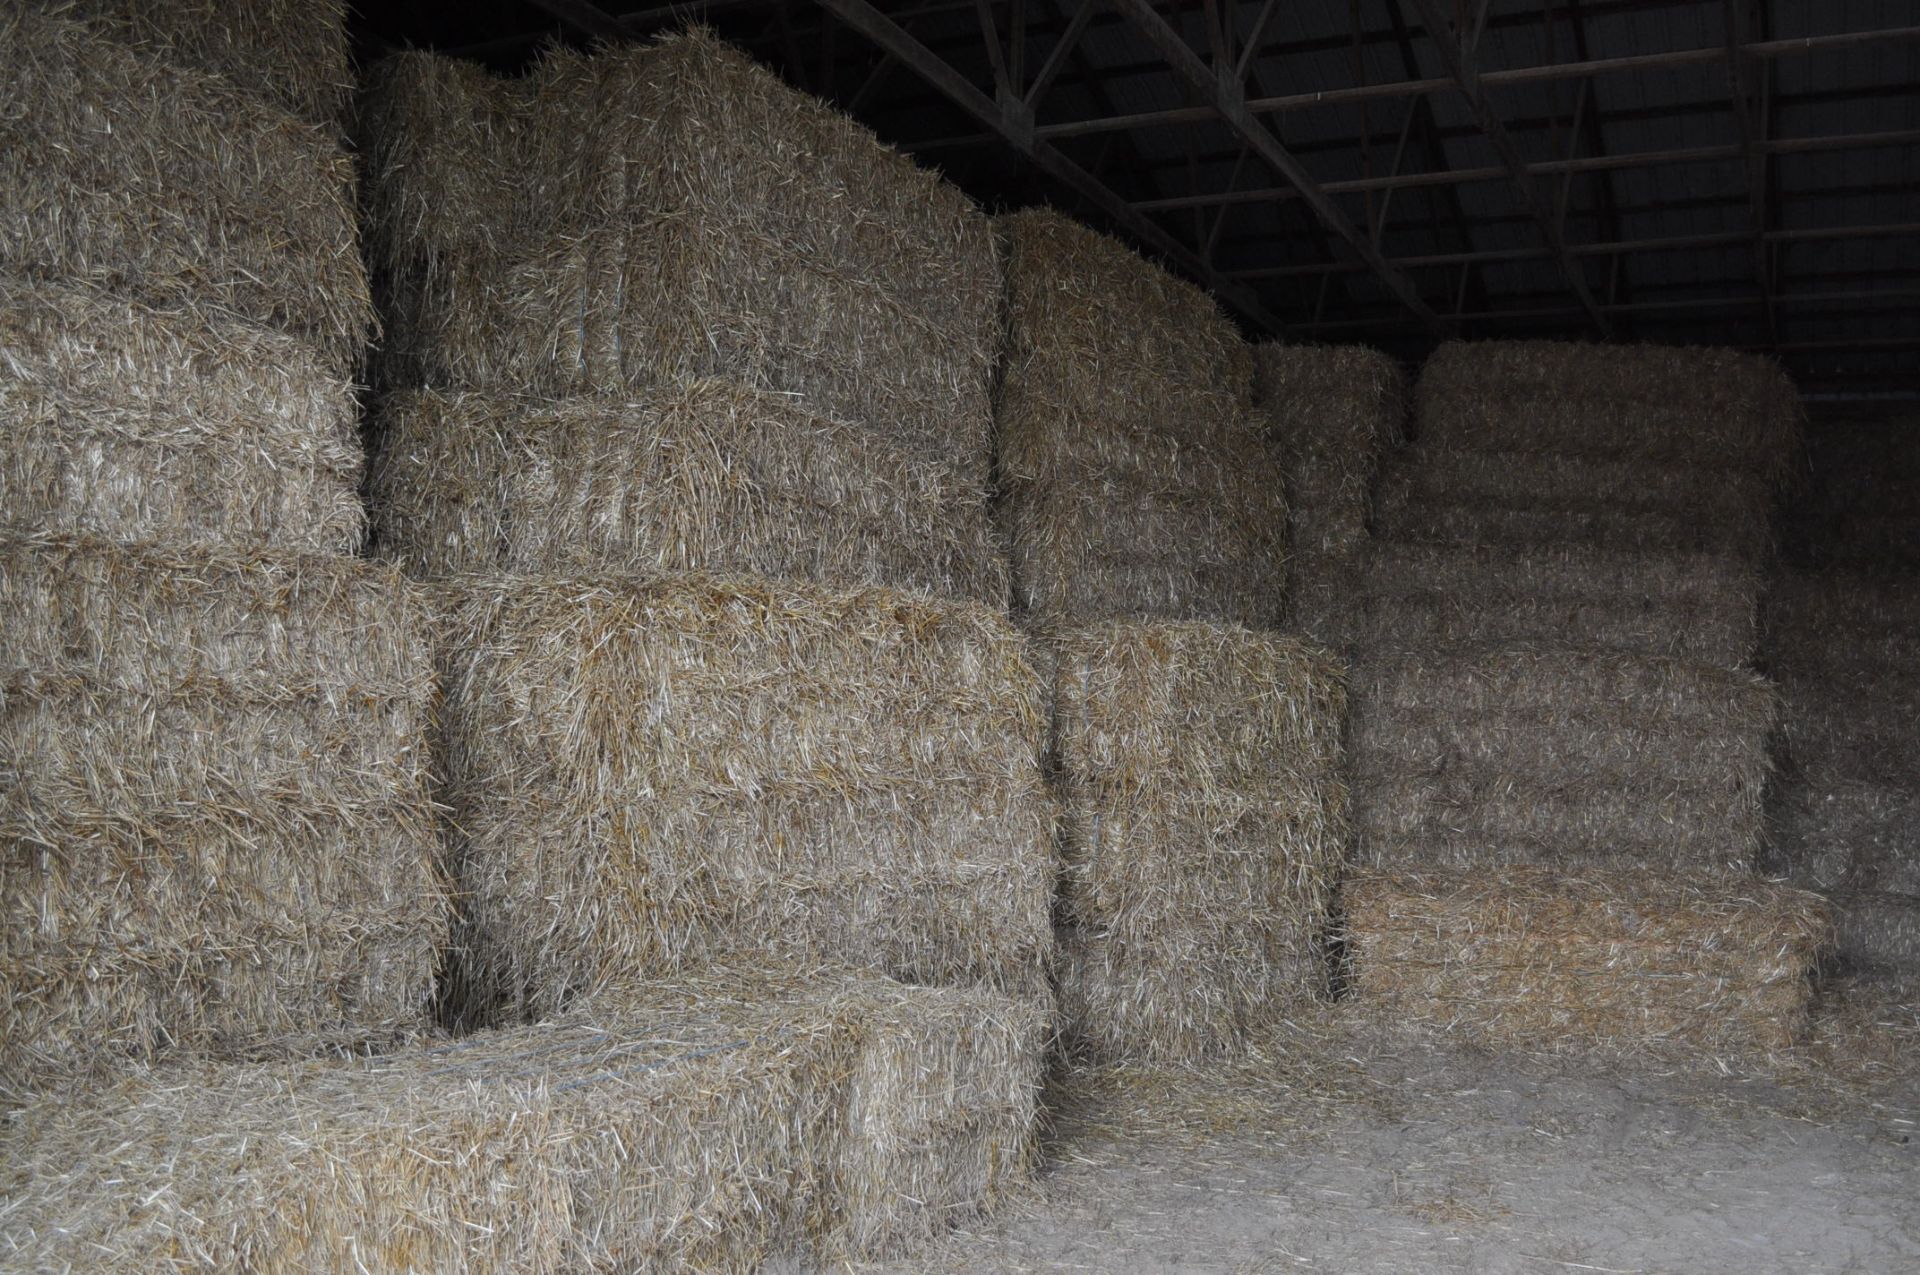 50 straw large square bales, 27”x32” bales